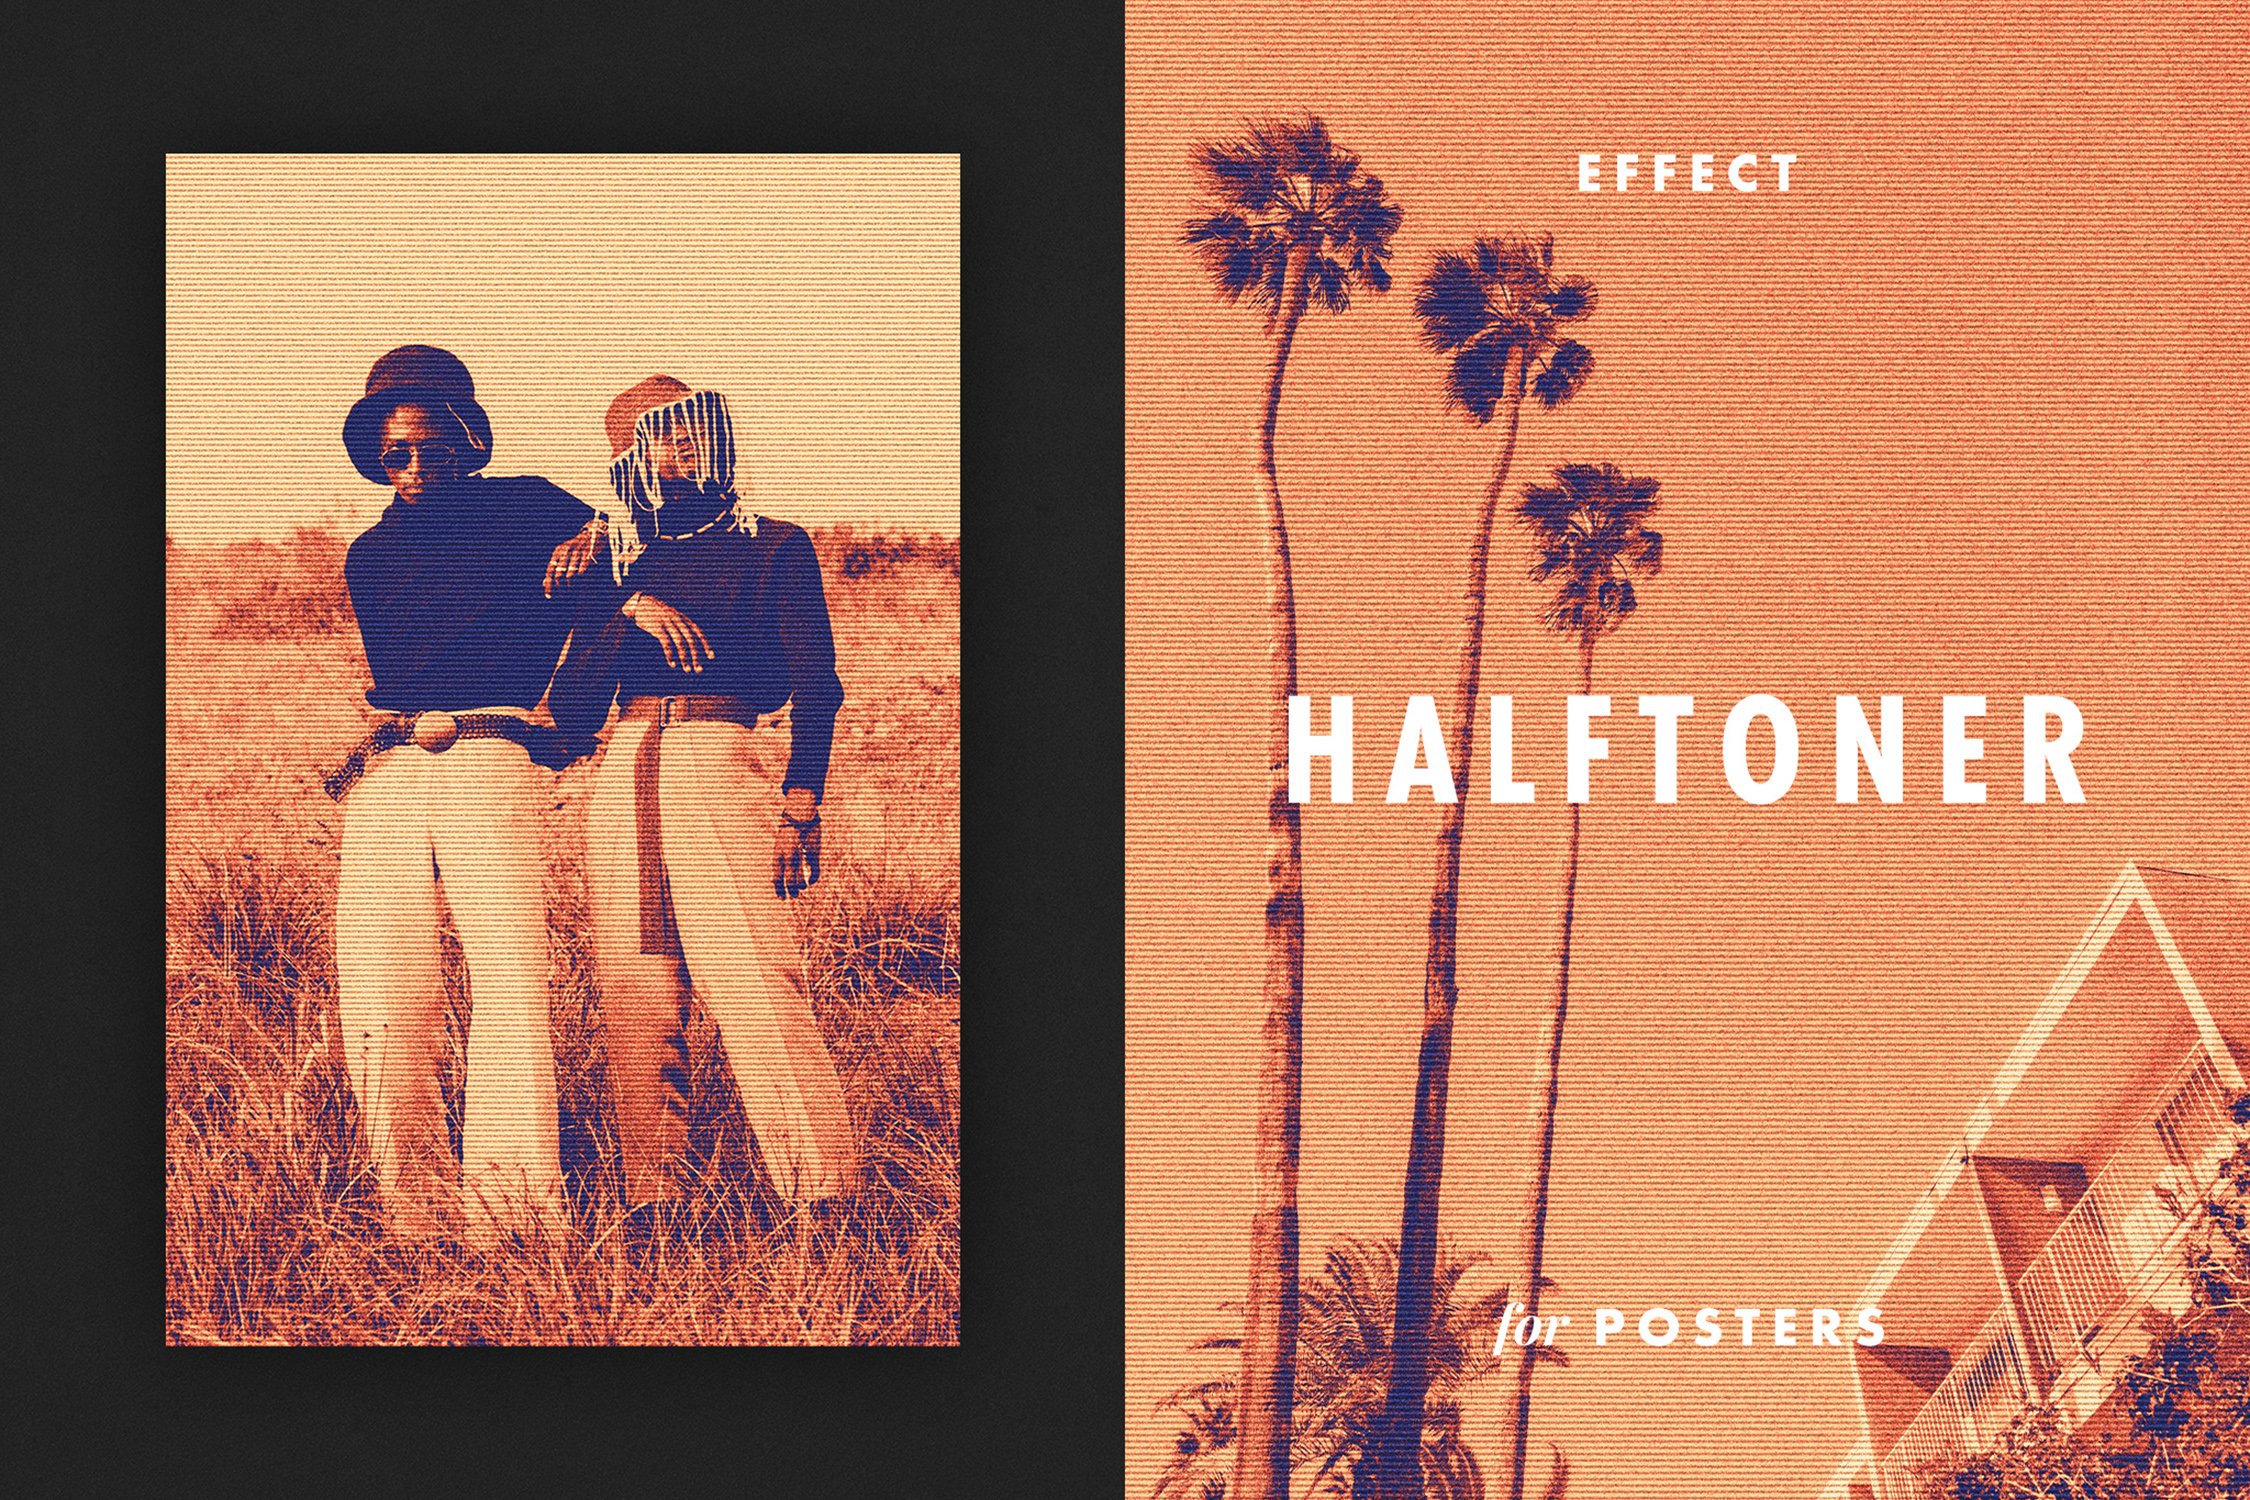 Halftoner Effect for Posterscover image.